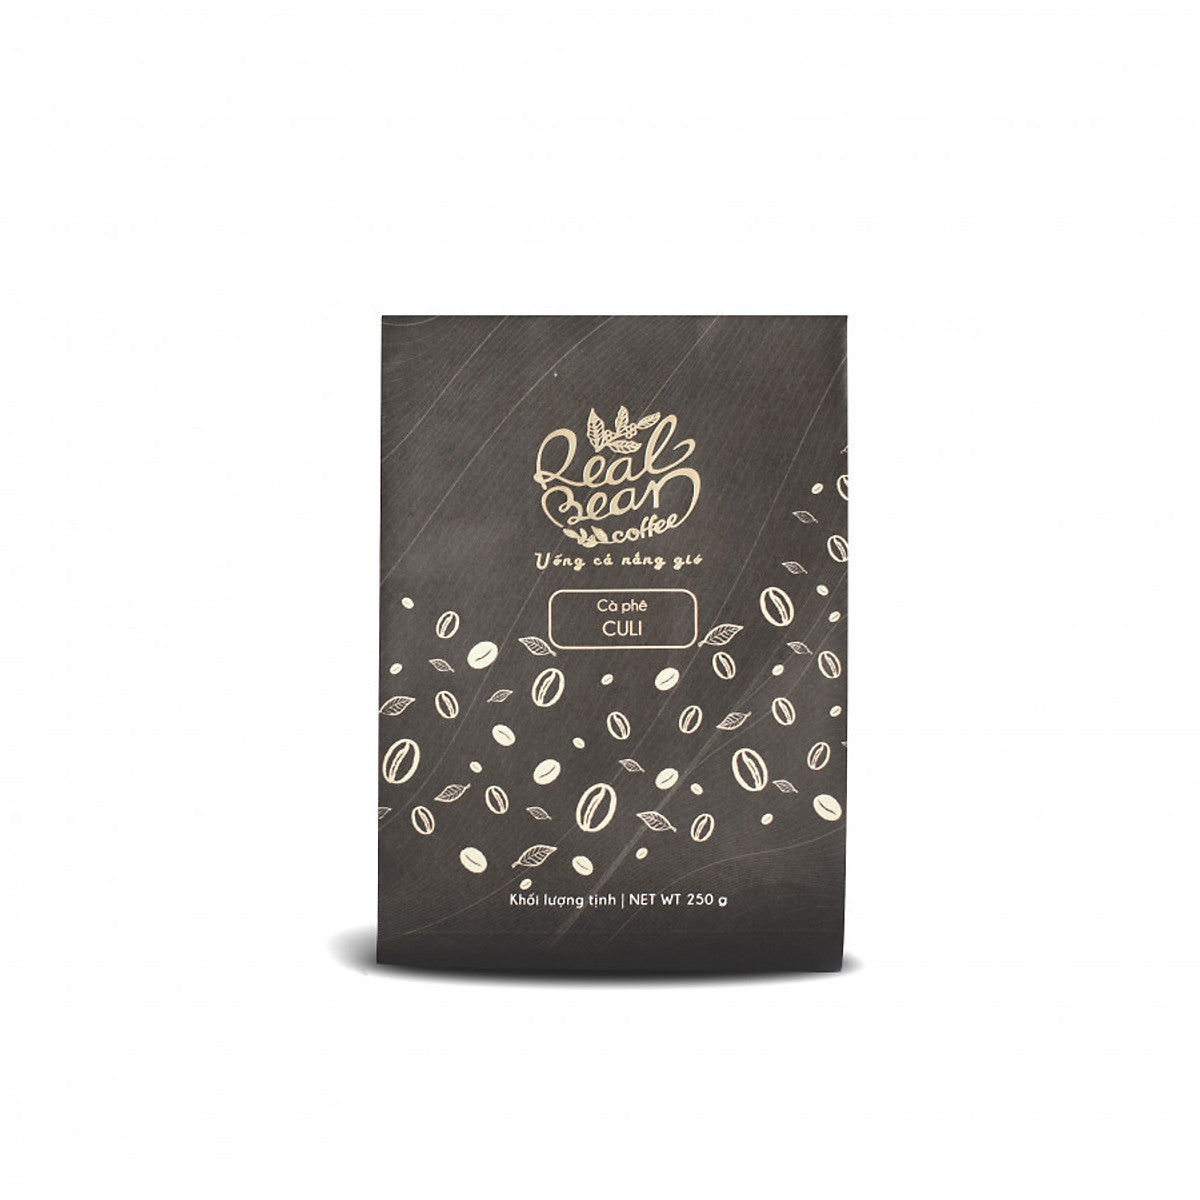 Cà phê Culi Real Bean Coffee nguyên chất rang xay 250gram dành cho pha phin và pha máy